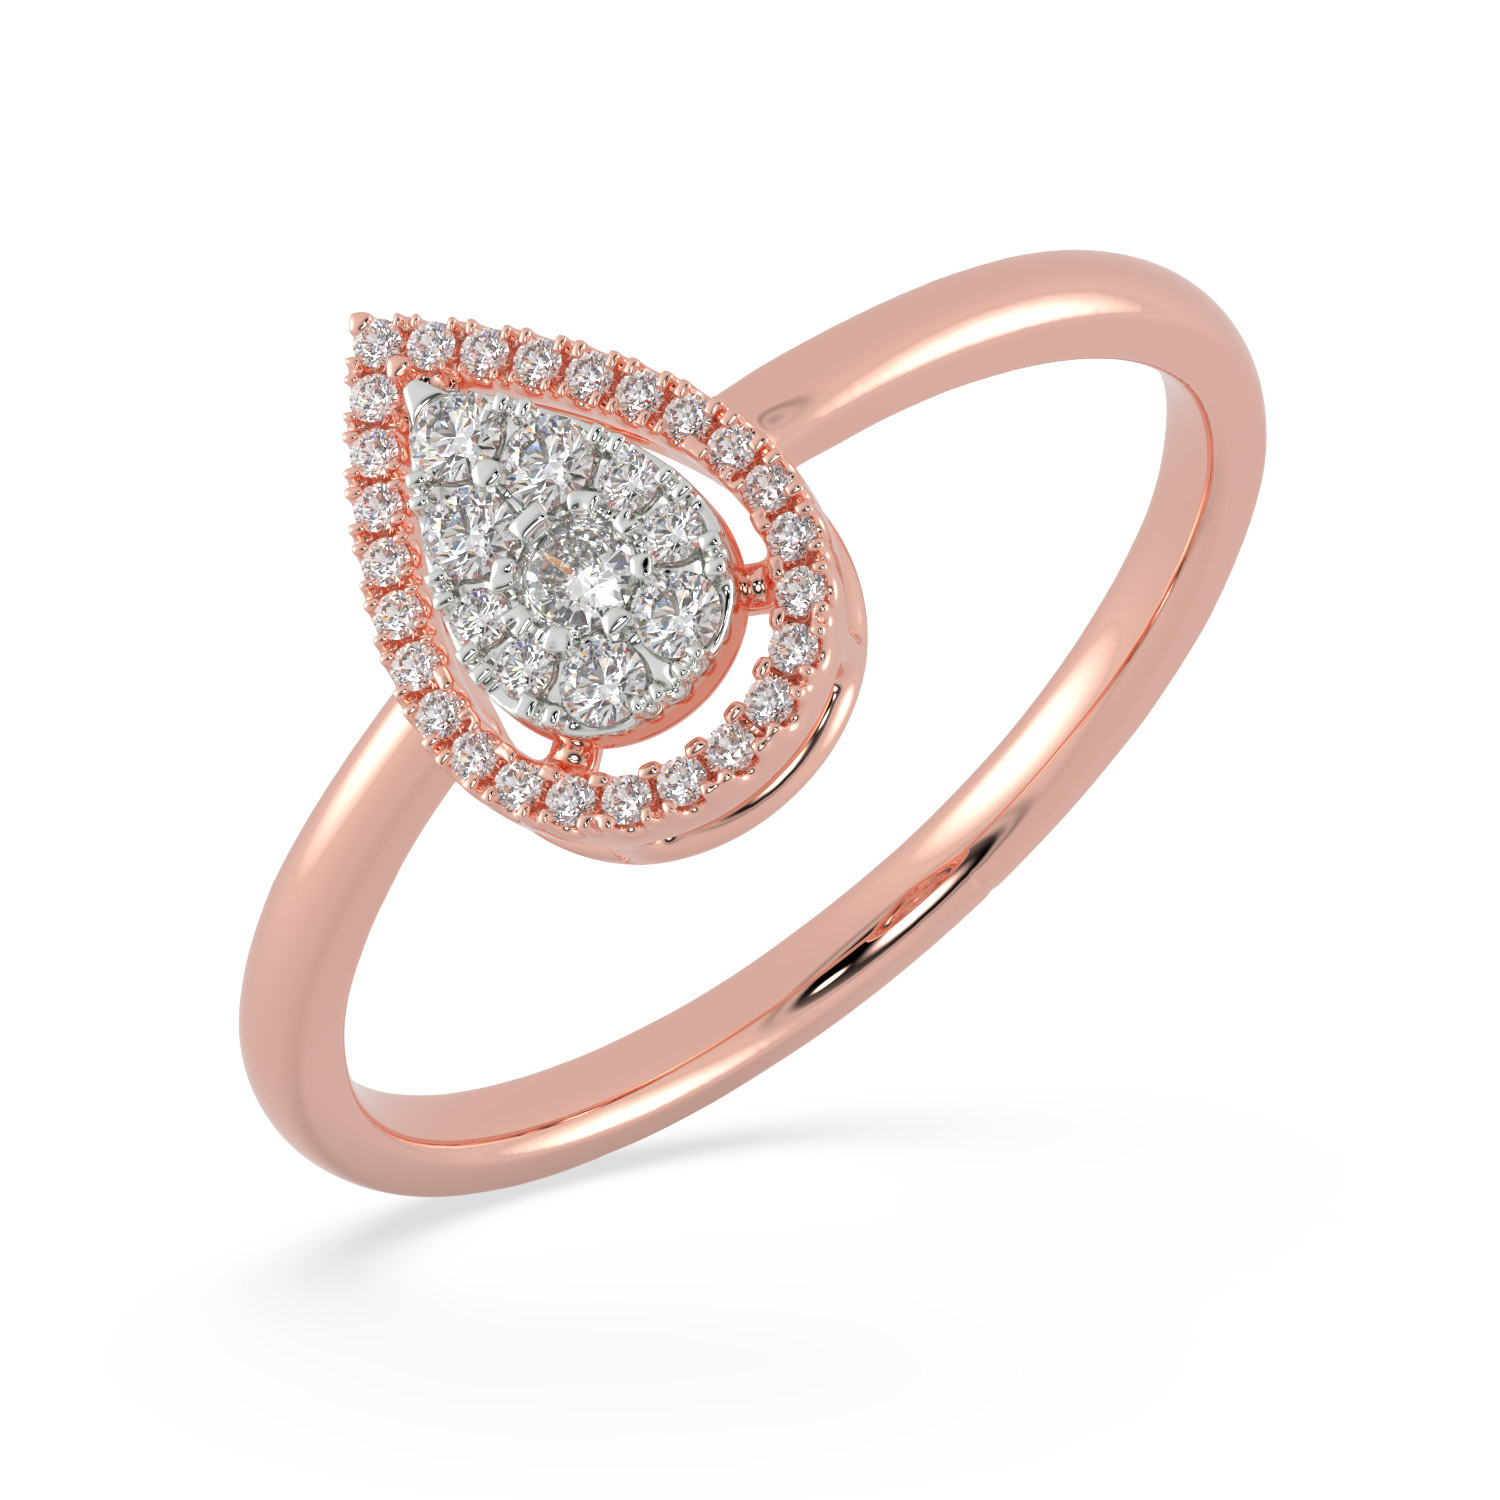 atlas ring - 2.5 carat kite shaped moissanite and diamond ring, ZAYA M – J  Hollywood Designs